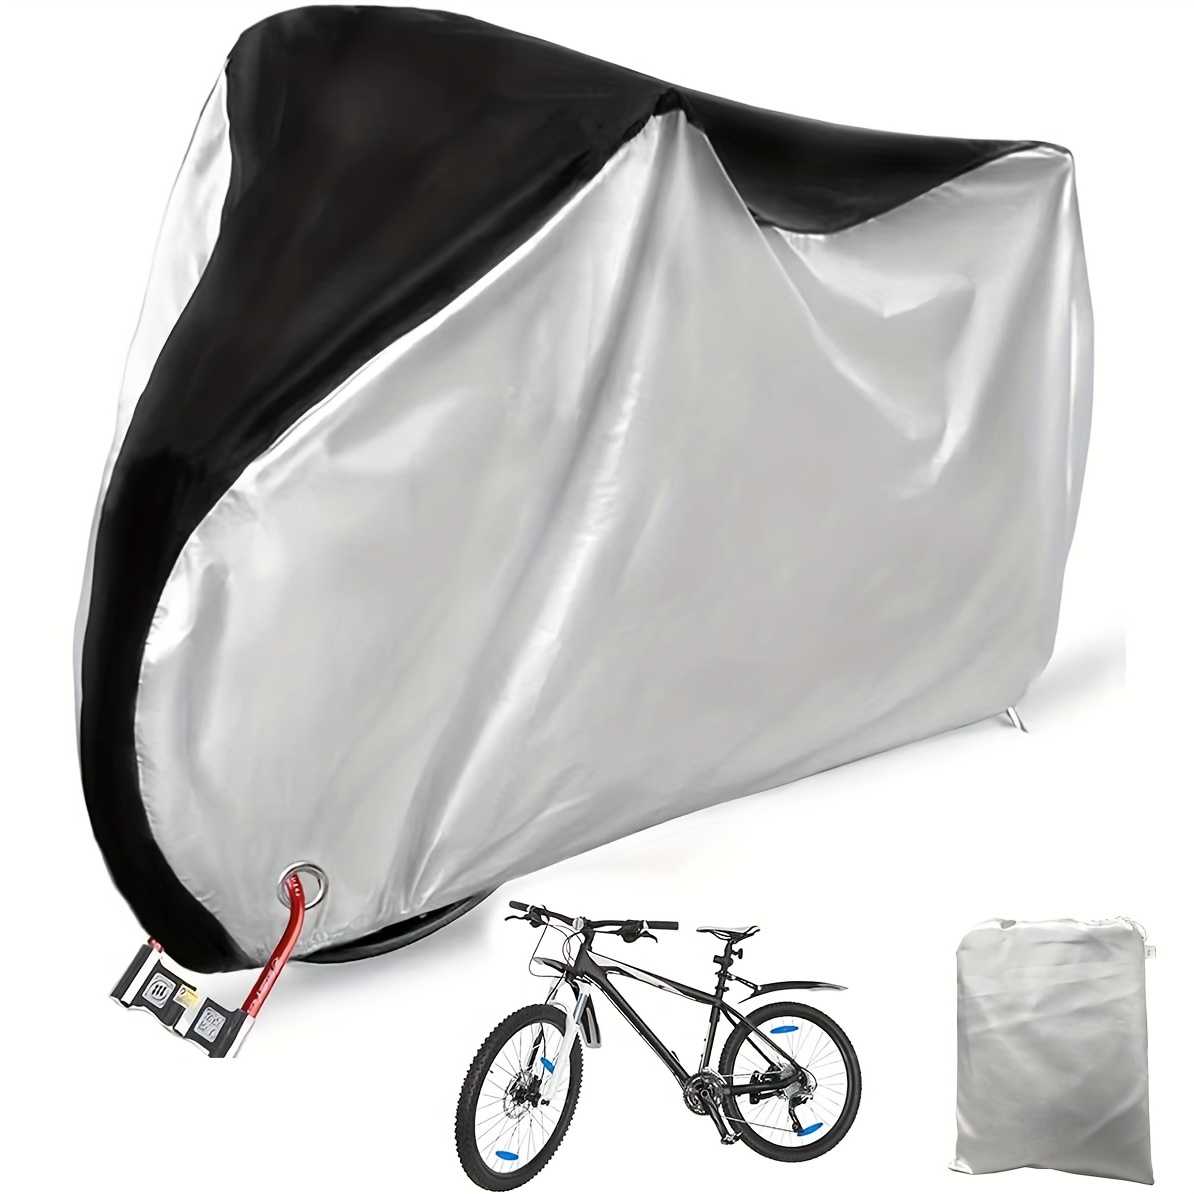 

Waterproof Bike Cover, Dustproof Anti-uv Outdoor Bike Cover, Bike Rainproof Cover, Bike Protective Covers For Mountain Bike Road Bike